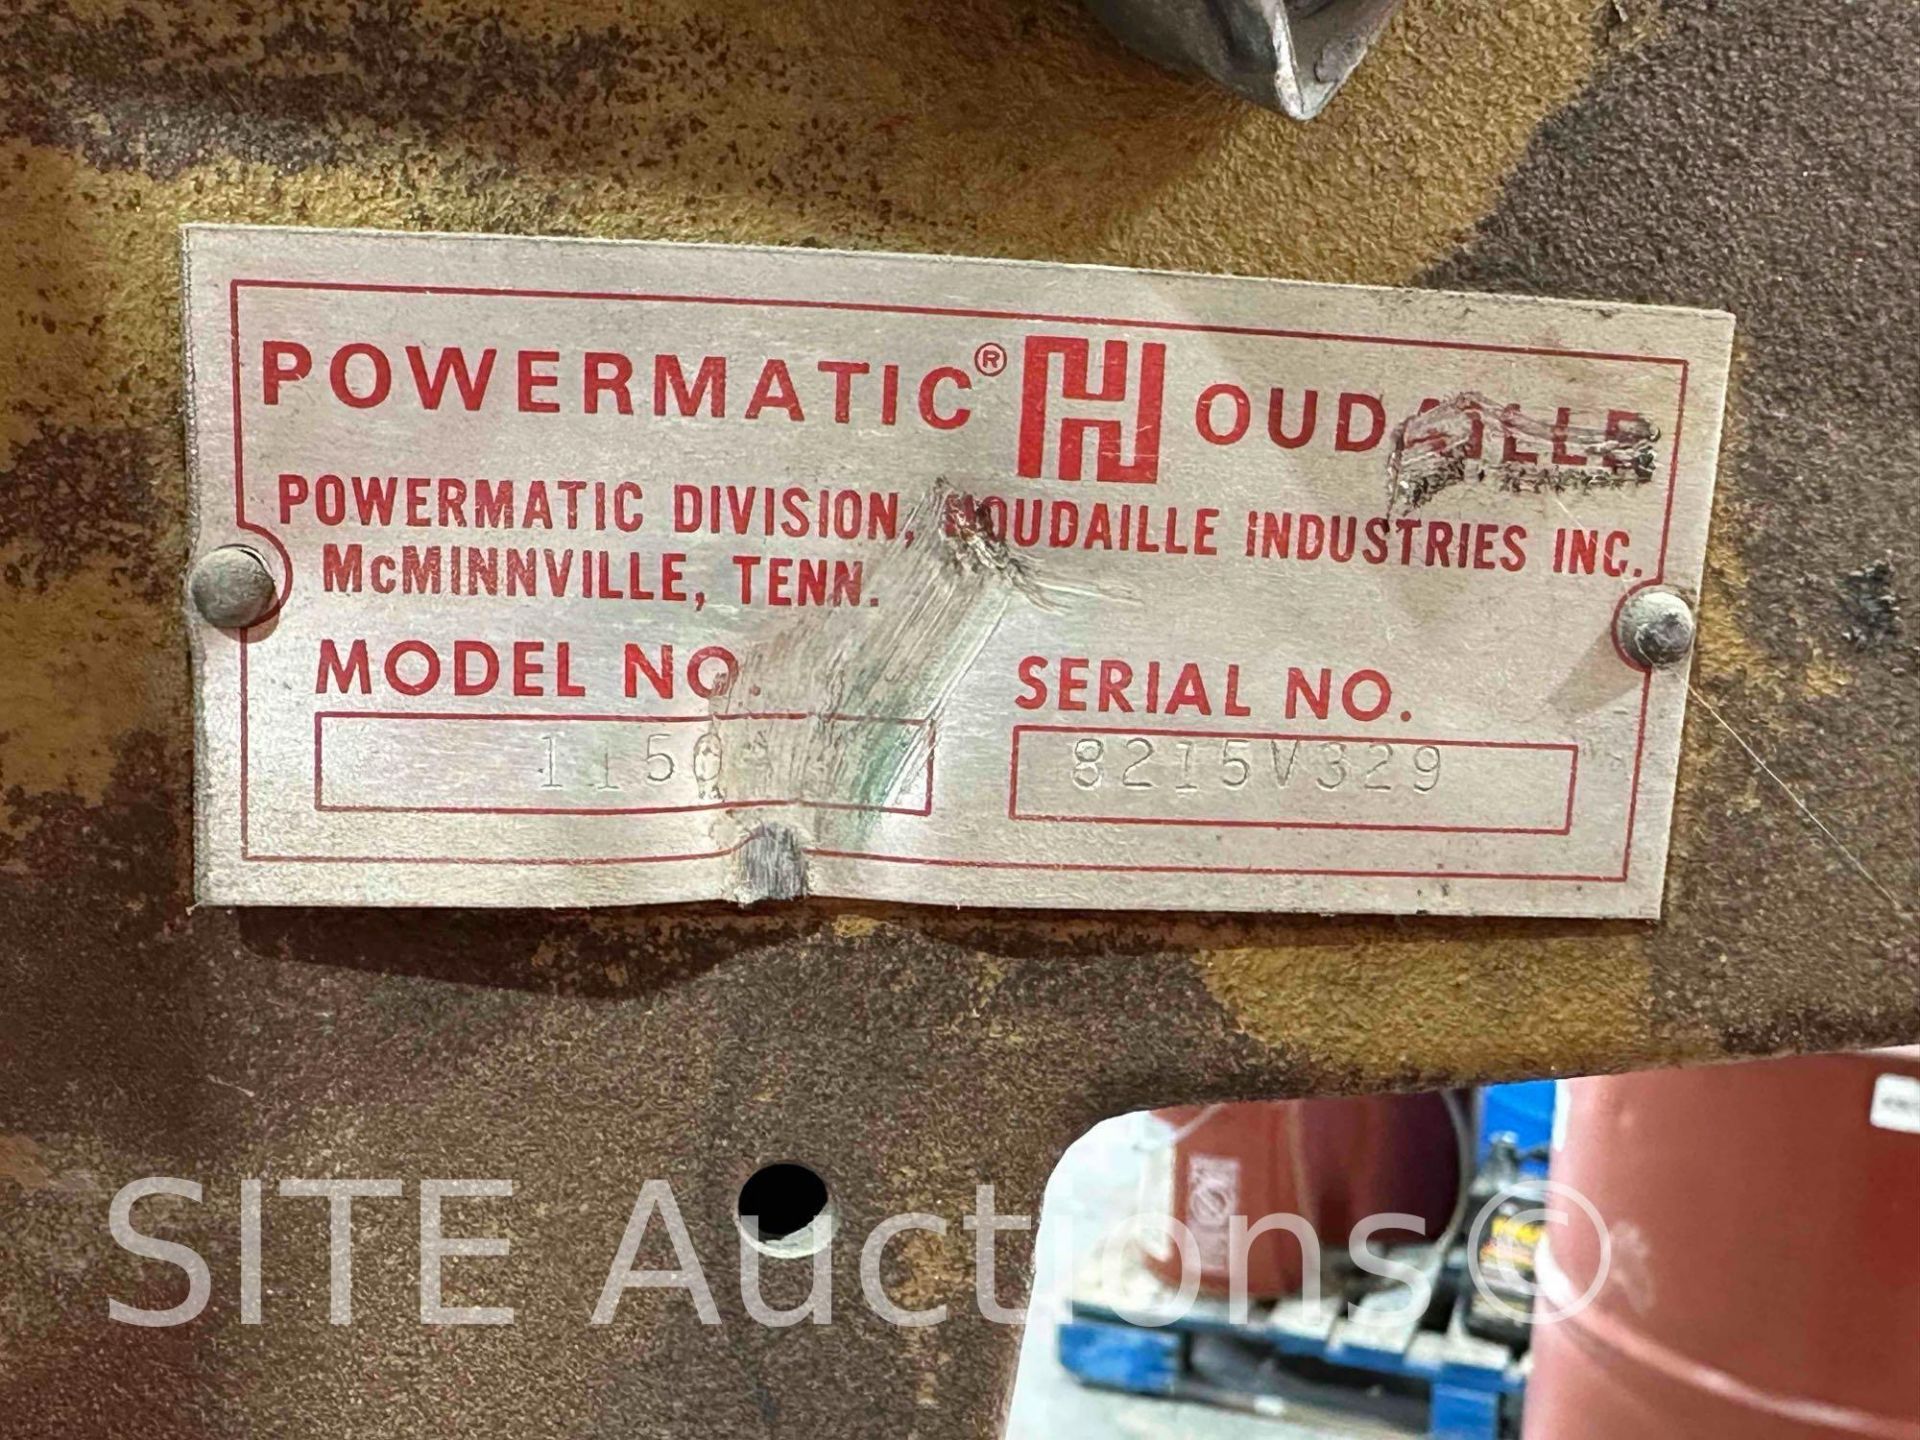 Powermatic 1150 Drill Press - Image 5 of 5